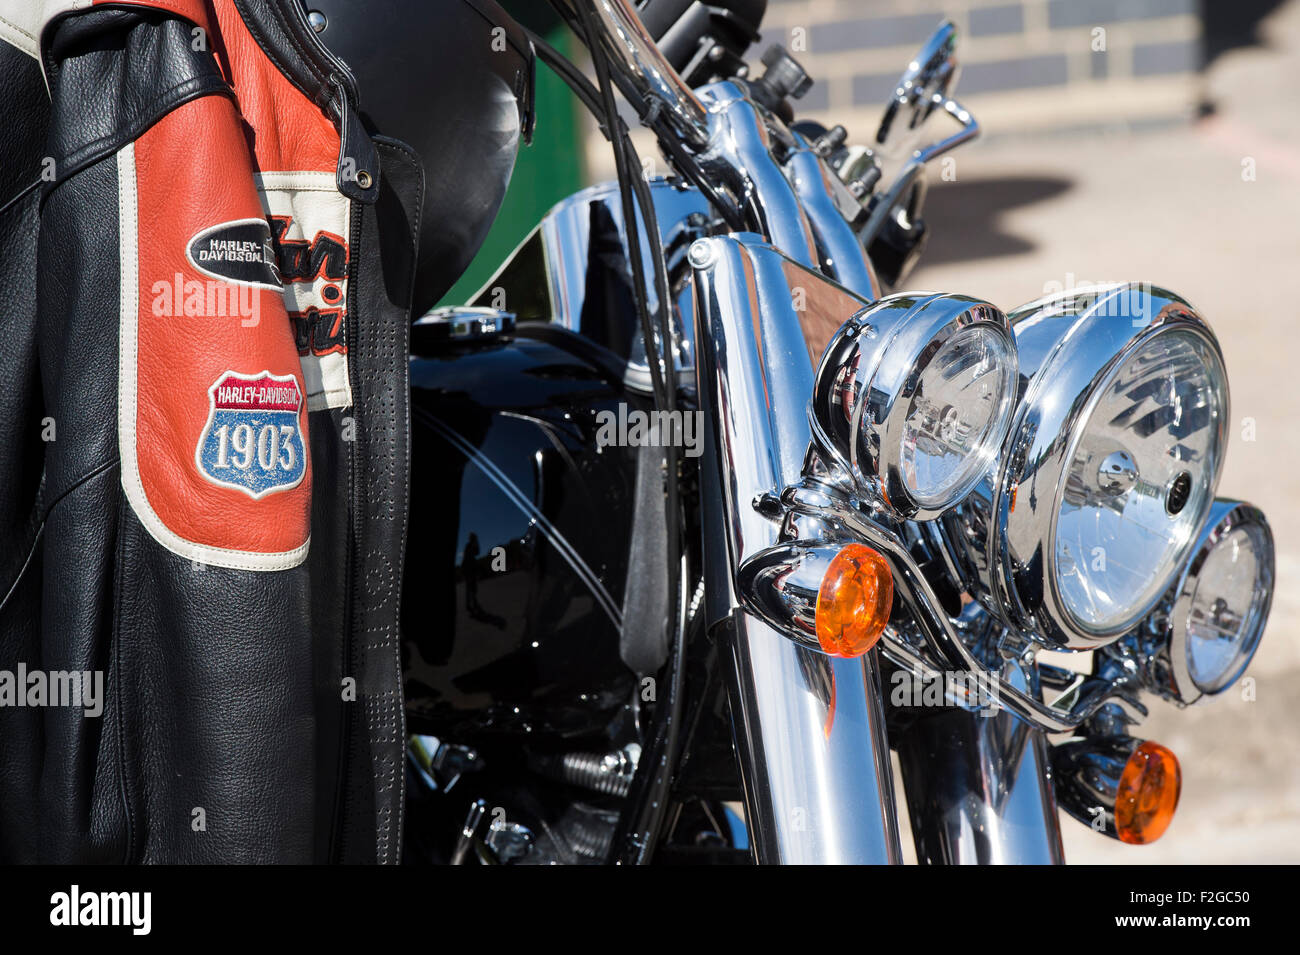 Blouson moto Harley Davidson accroché sur une Harley. UK Banque D'Images